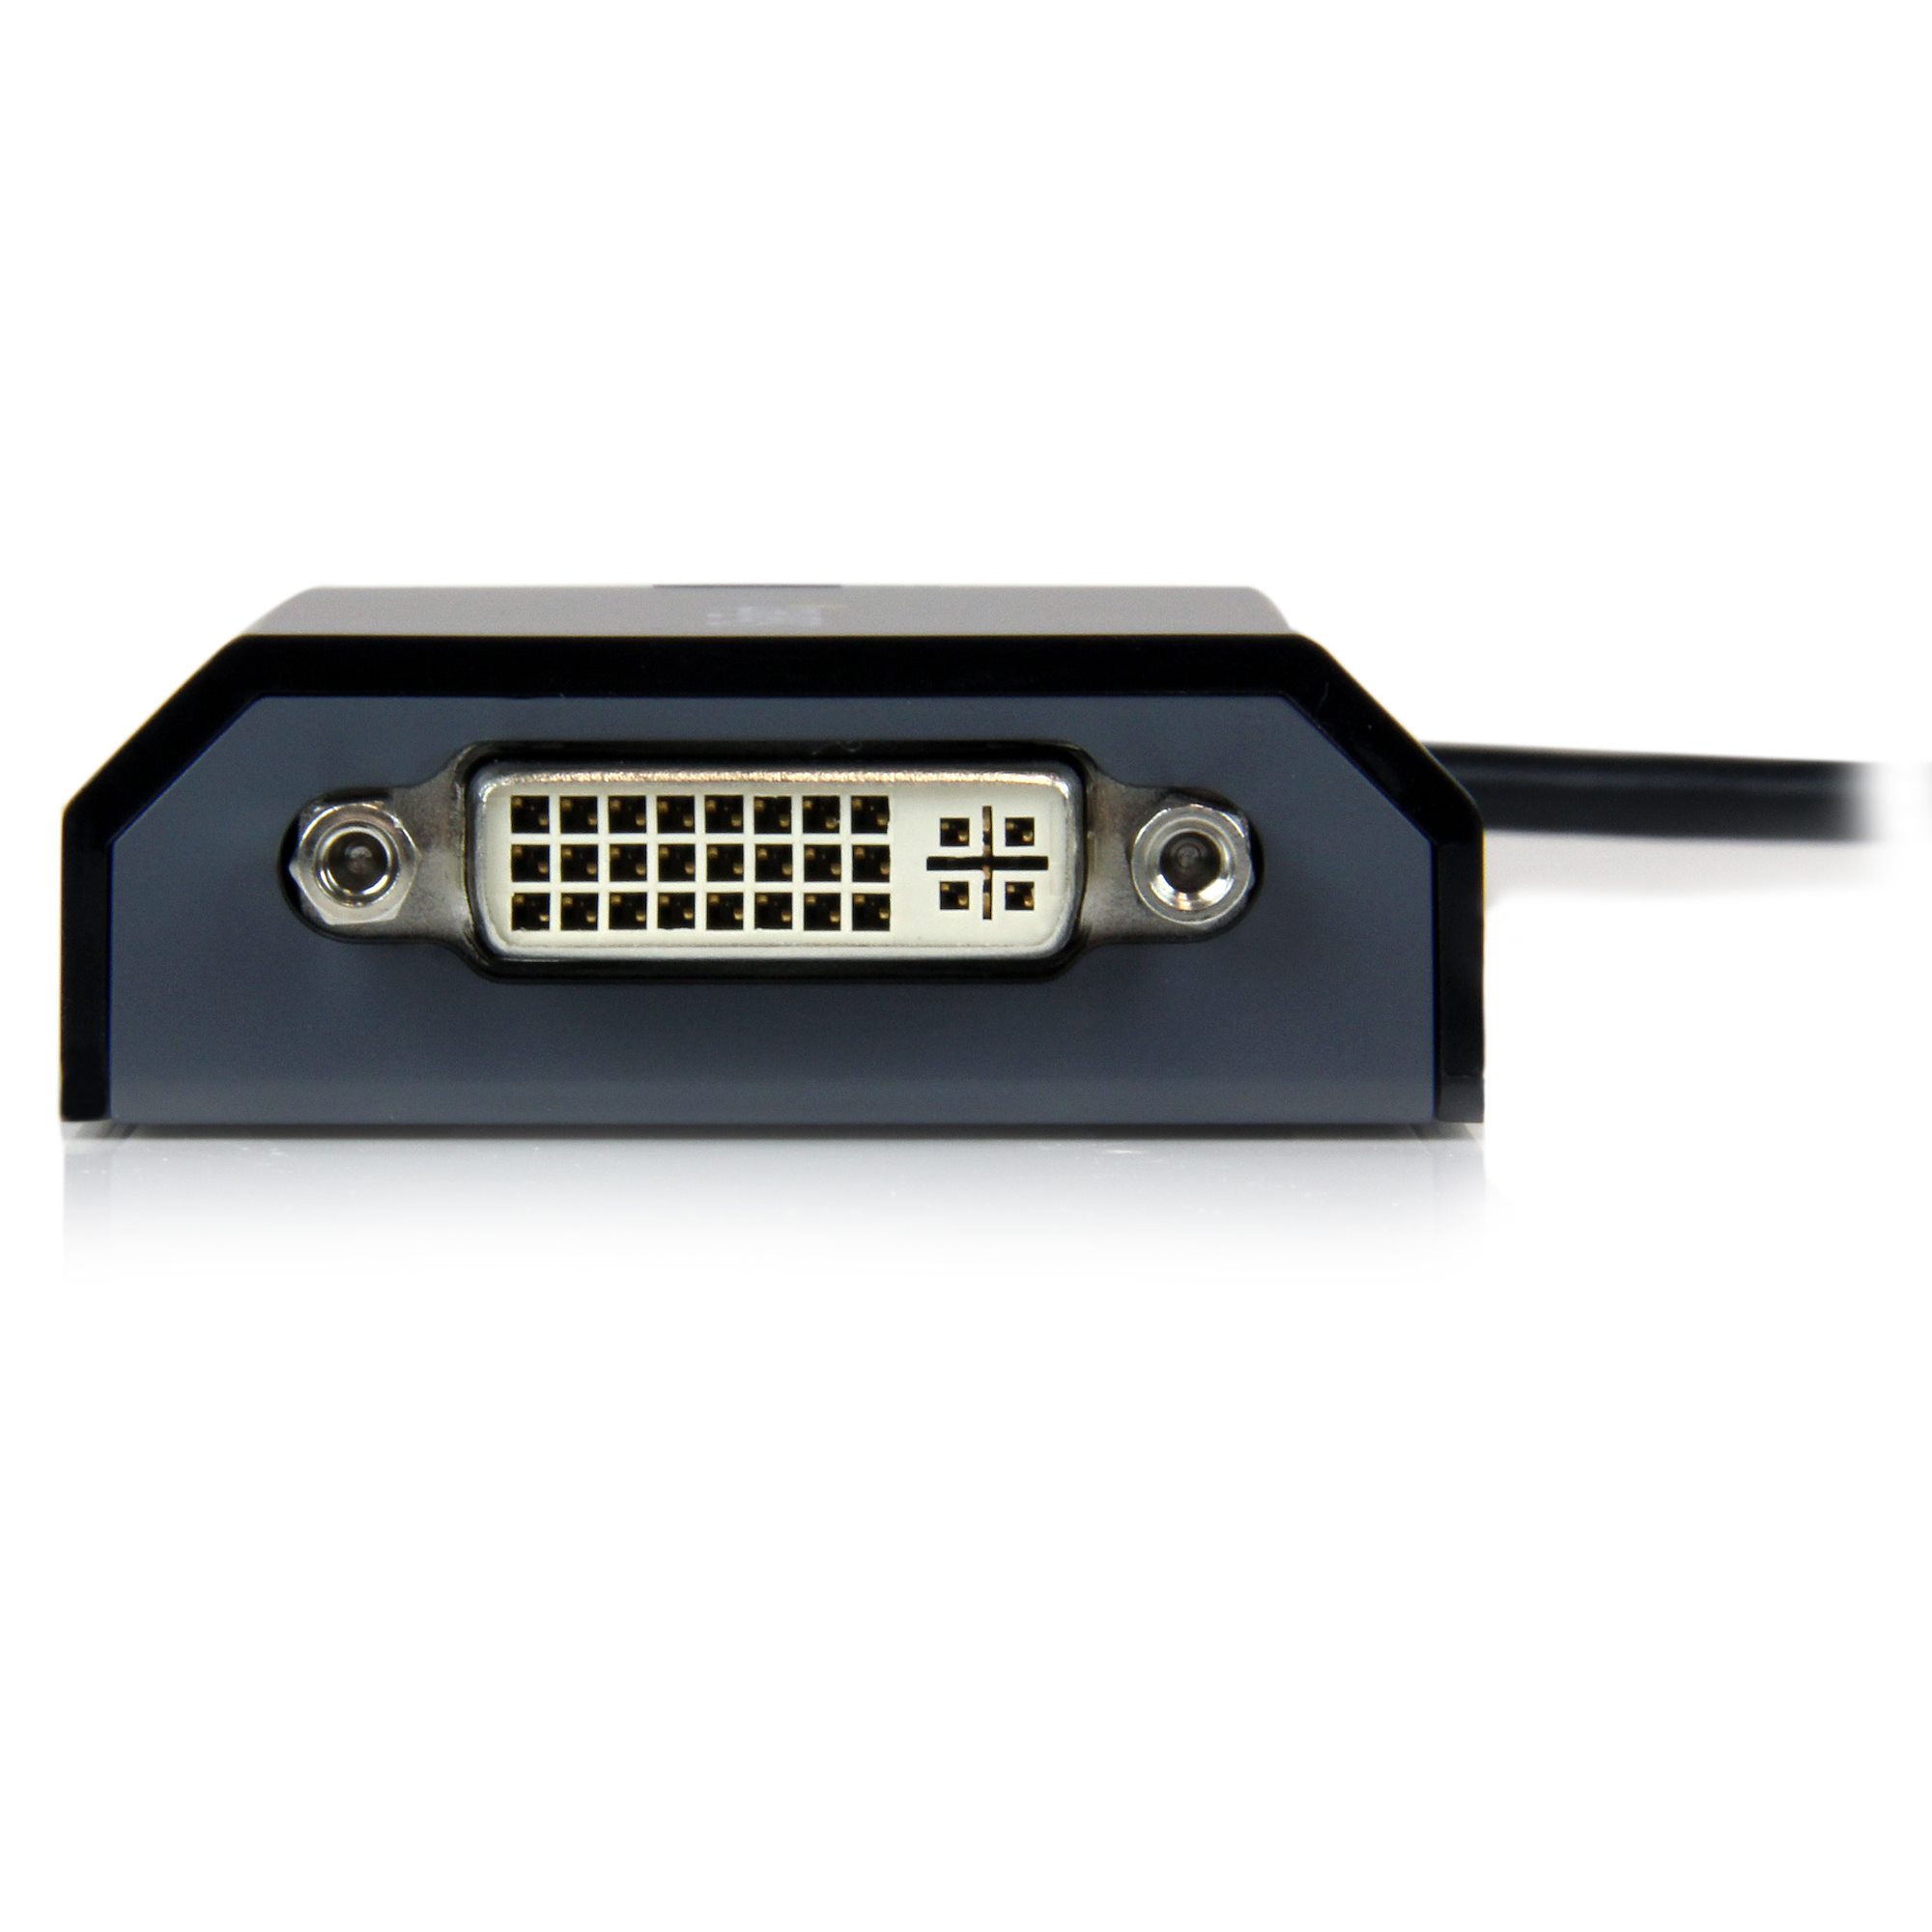 USB - DVI変換アダプタ USB接続外付けグラフィックアダプタ MAC対応 